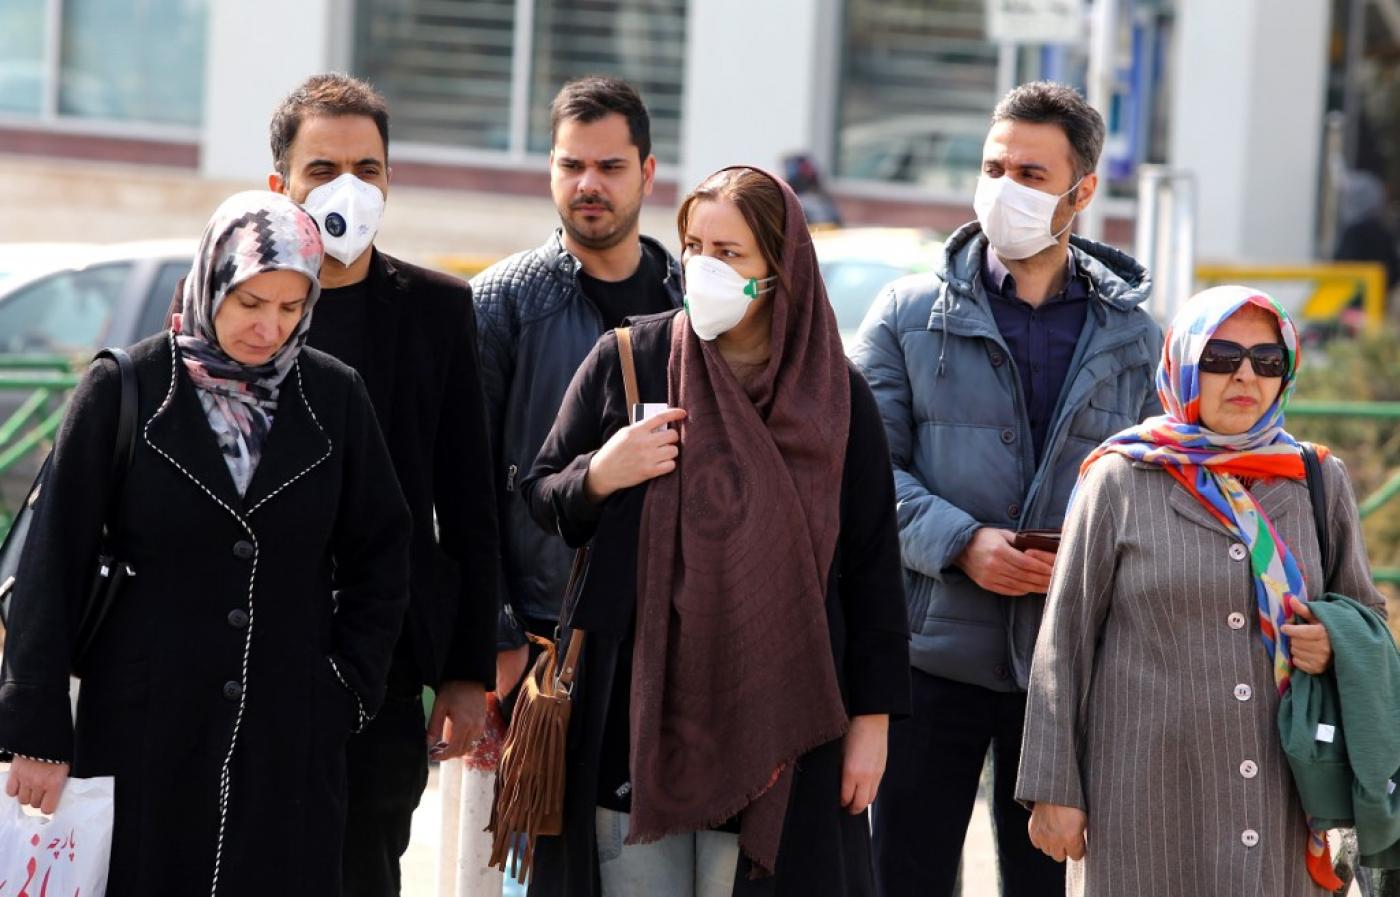   Iran ghi nhận 15 người tử vong do COVID-19, Thứ trưởng Bộ y tế Iran cũng dương tính với loại virus này  